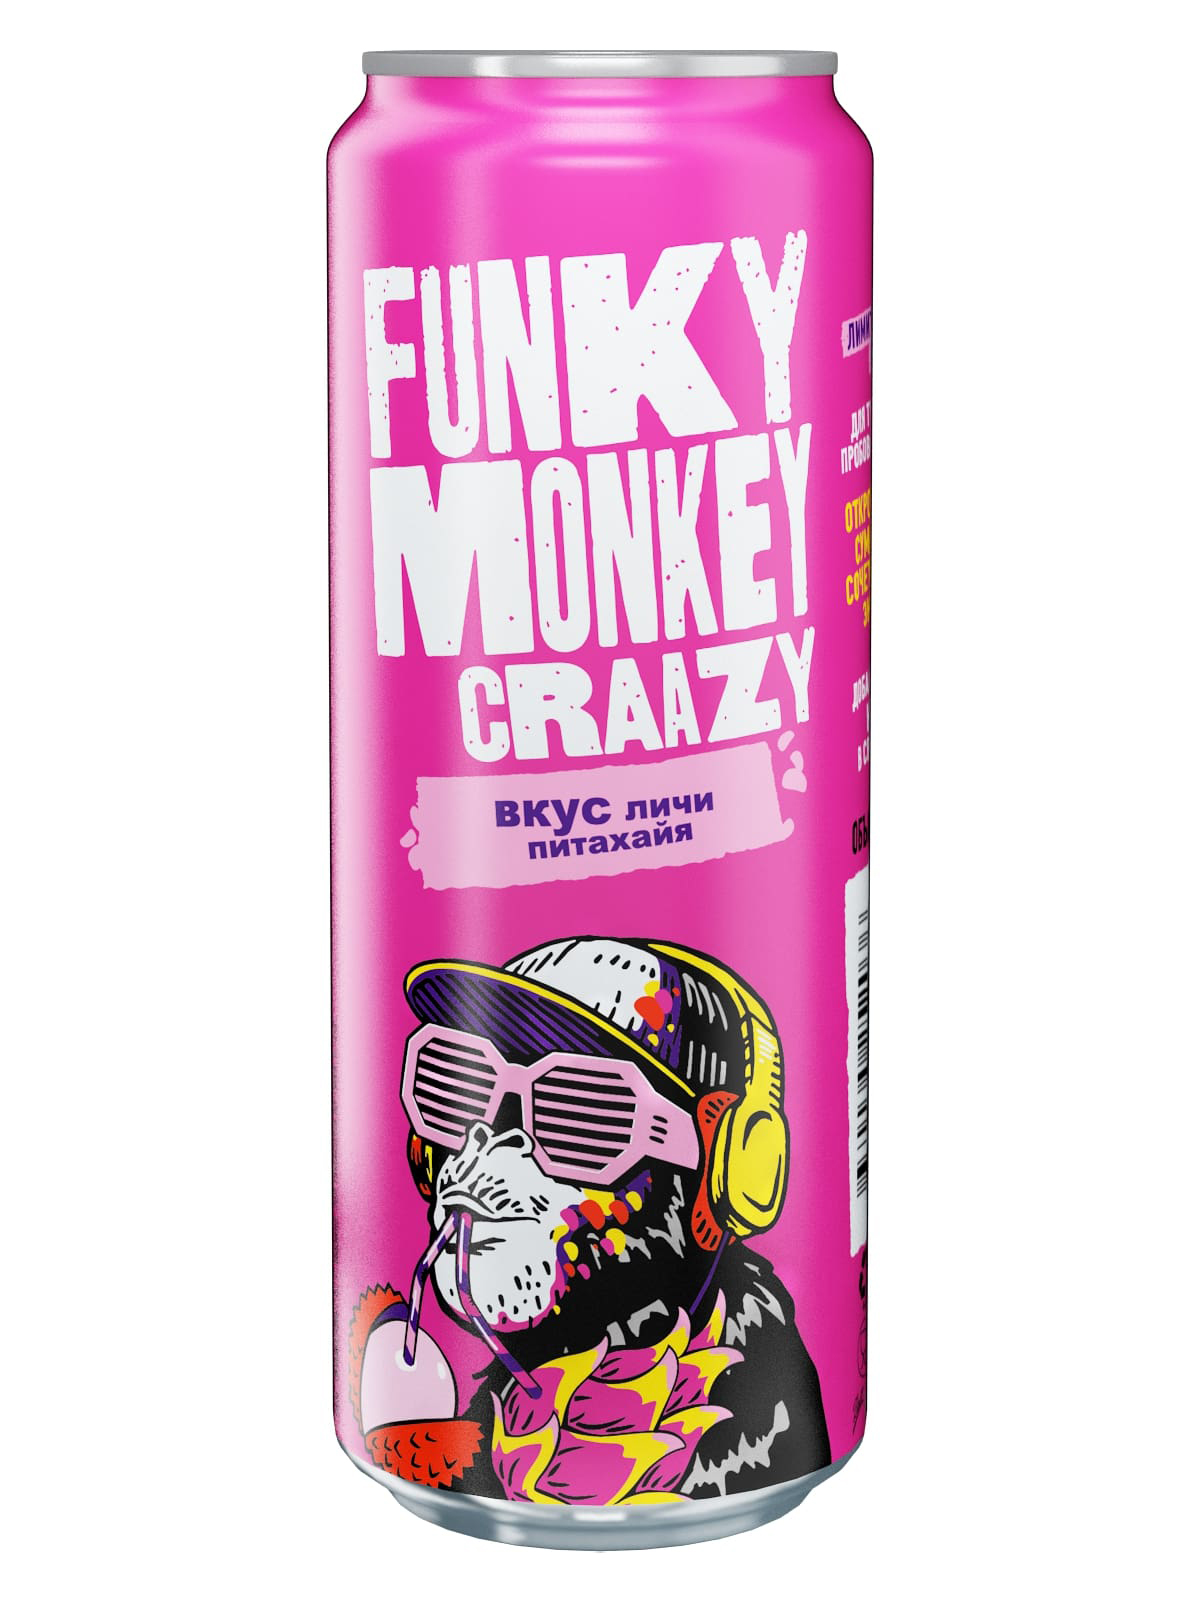 Funky Monkey запускает новую серию вкусов на рынке газированных напитков | Новости компании